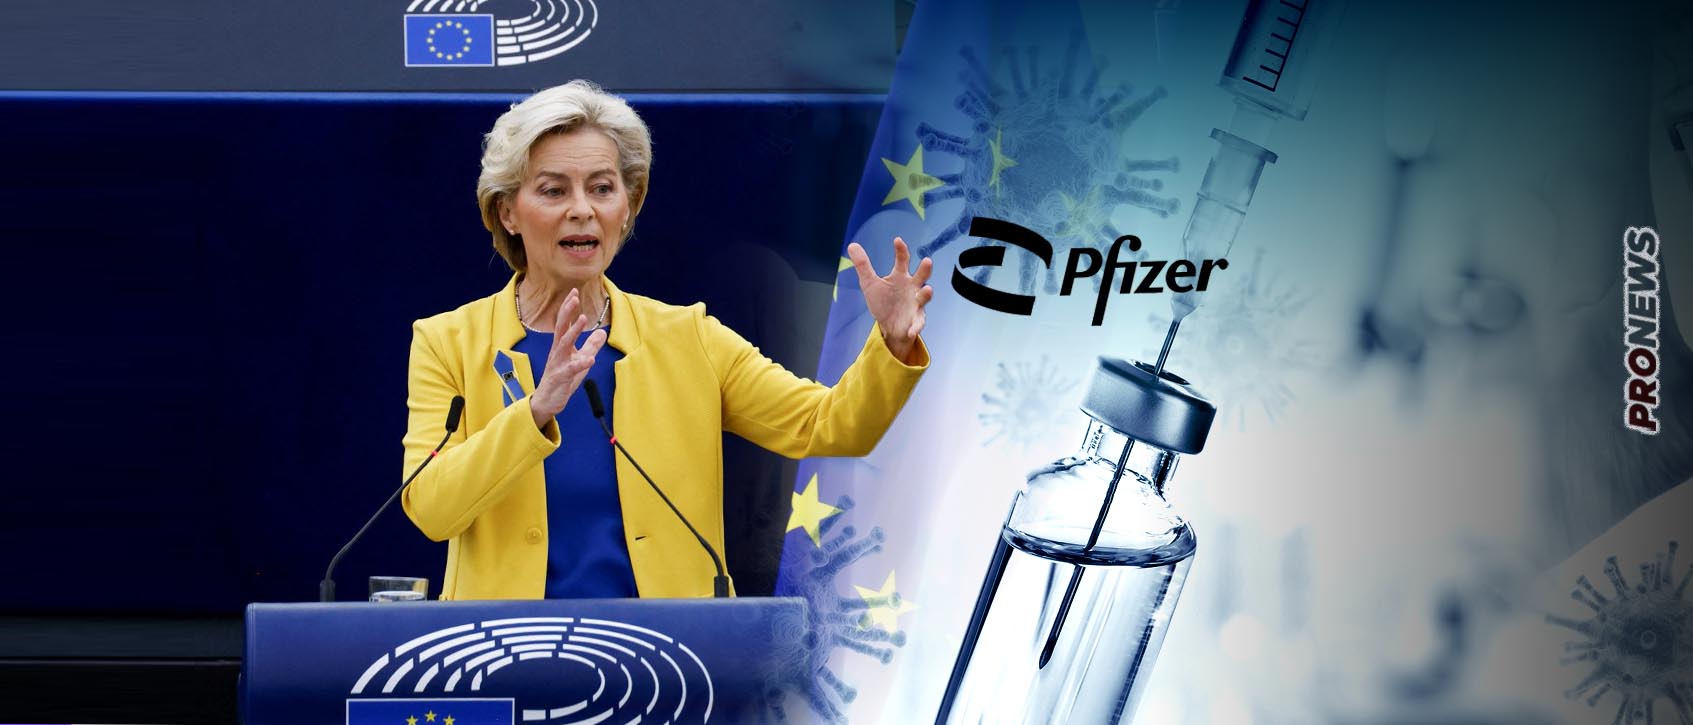 Πόσα πήραν από Pfizer στην ΕΕ για να προωθήσουν τα εμβόλια κατά Covid-19; – Μήνυση από NYT και Bild κατά Ούρσουλας φον ντερ Λάιεν